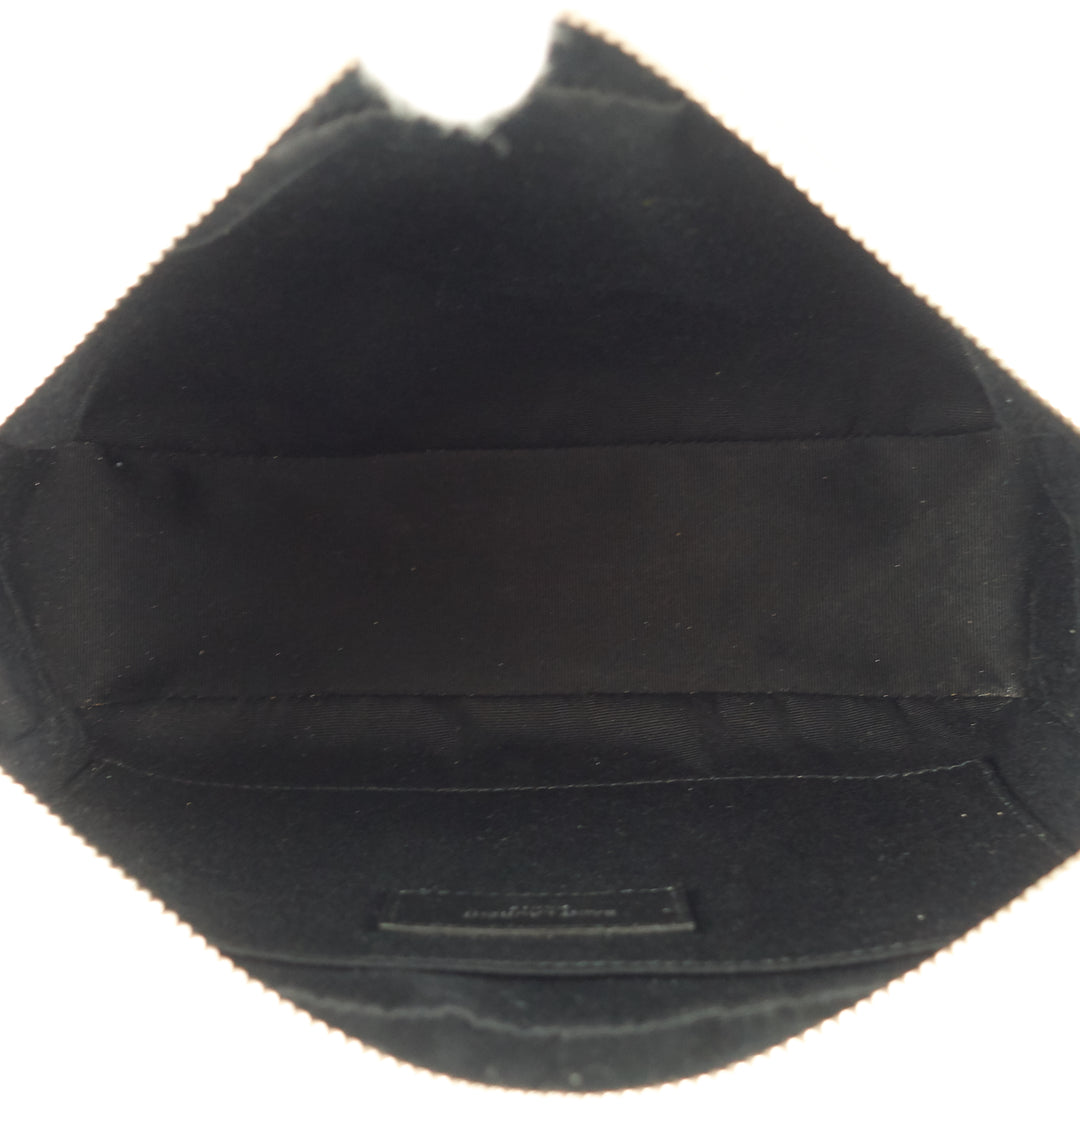 lou leather small camera bag